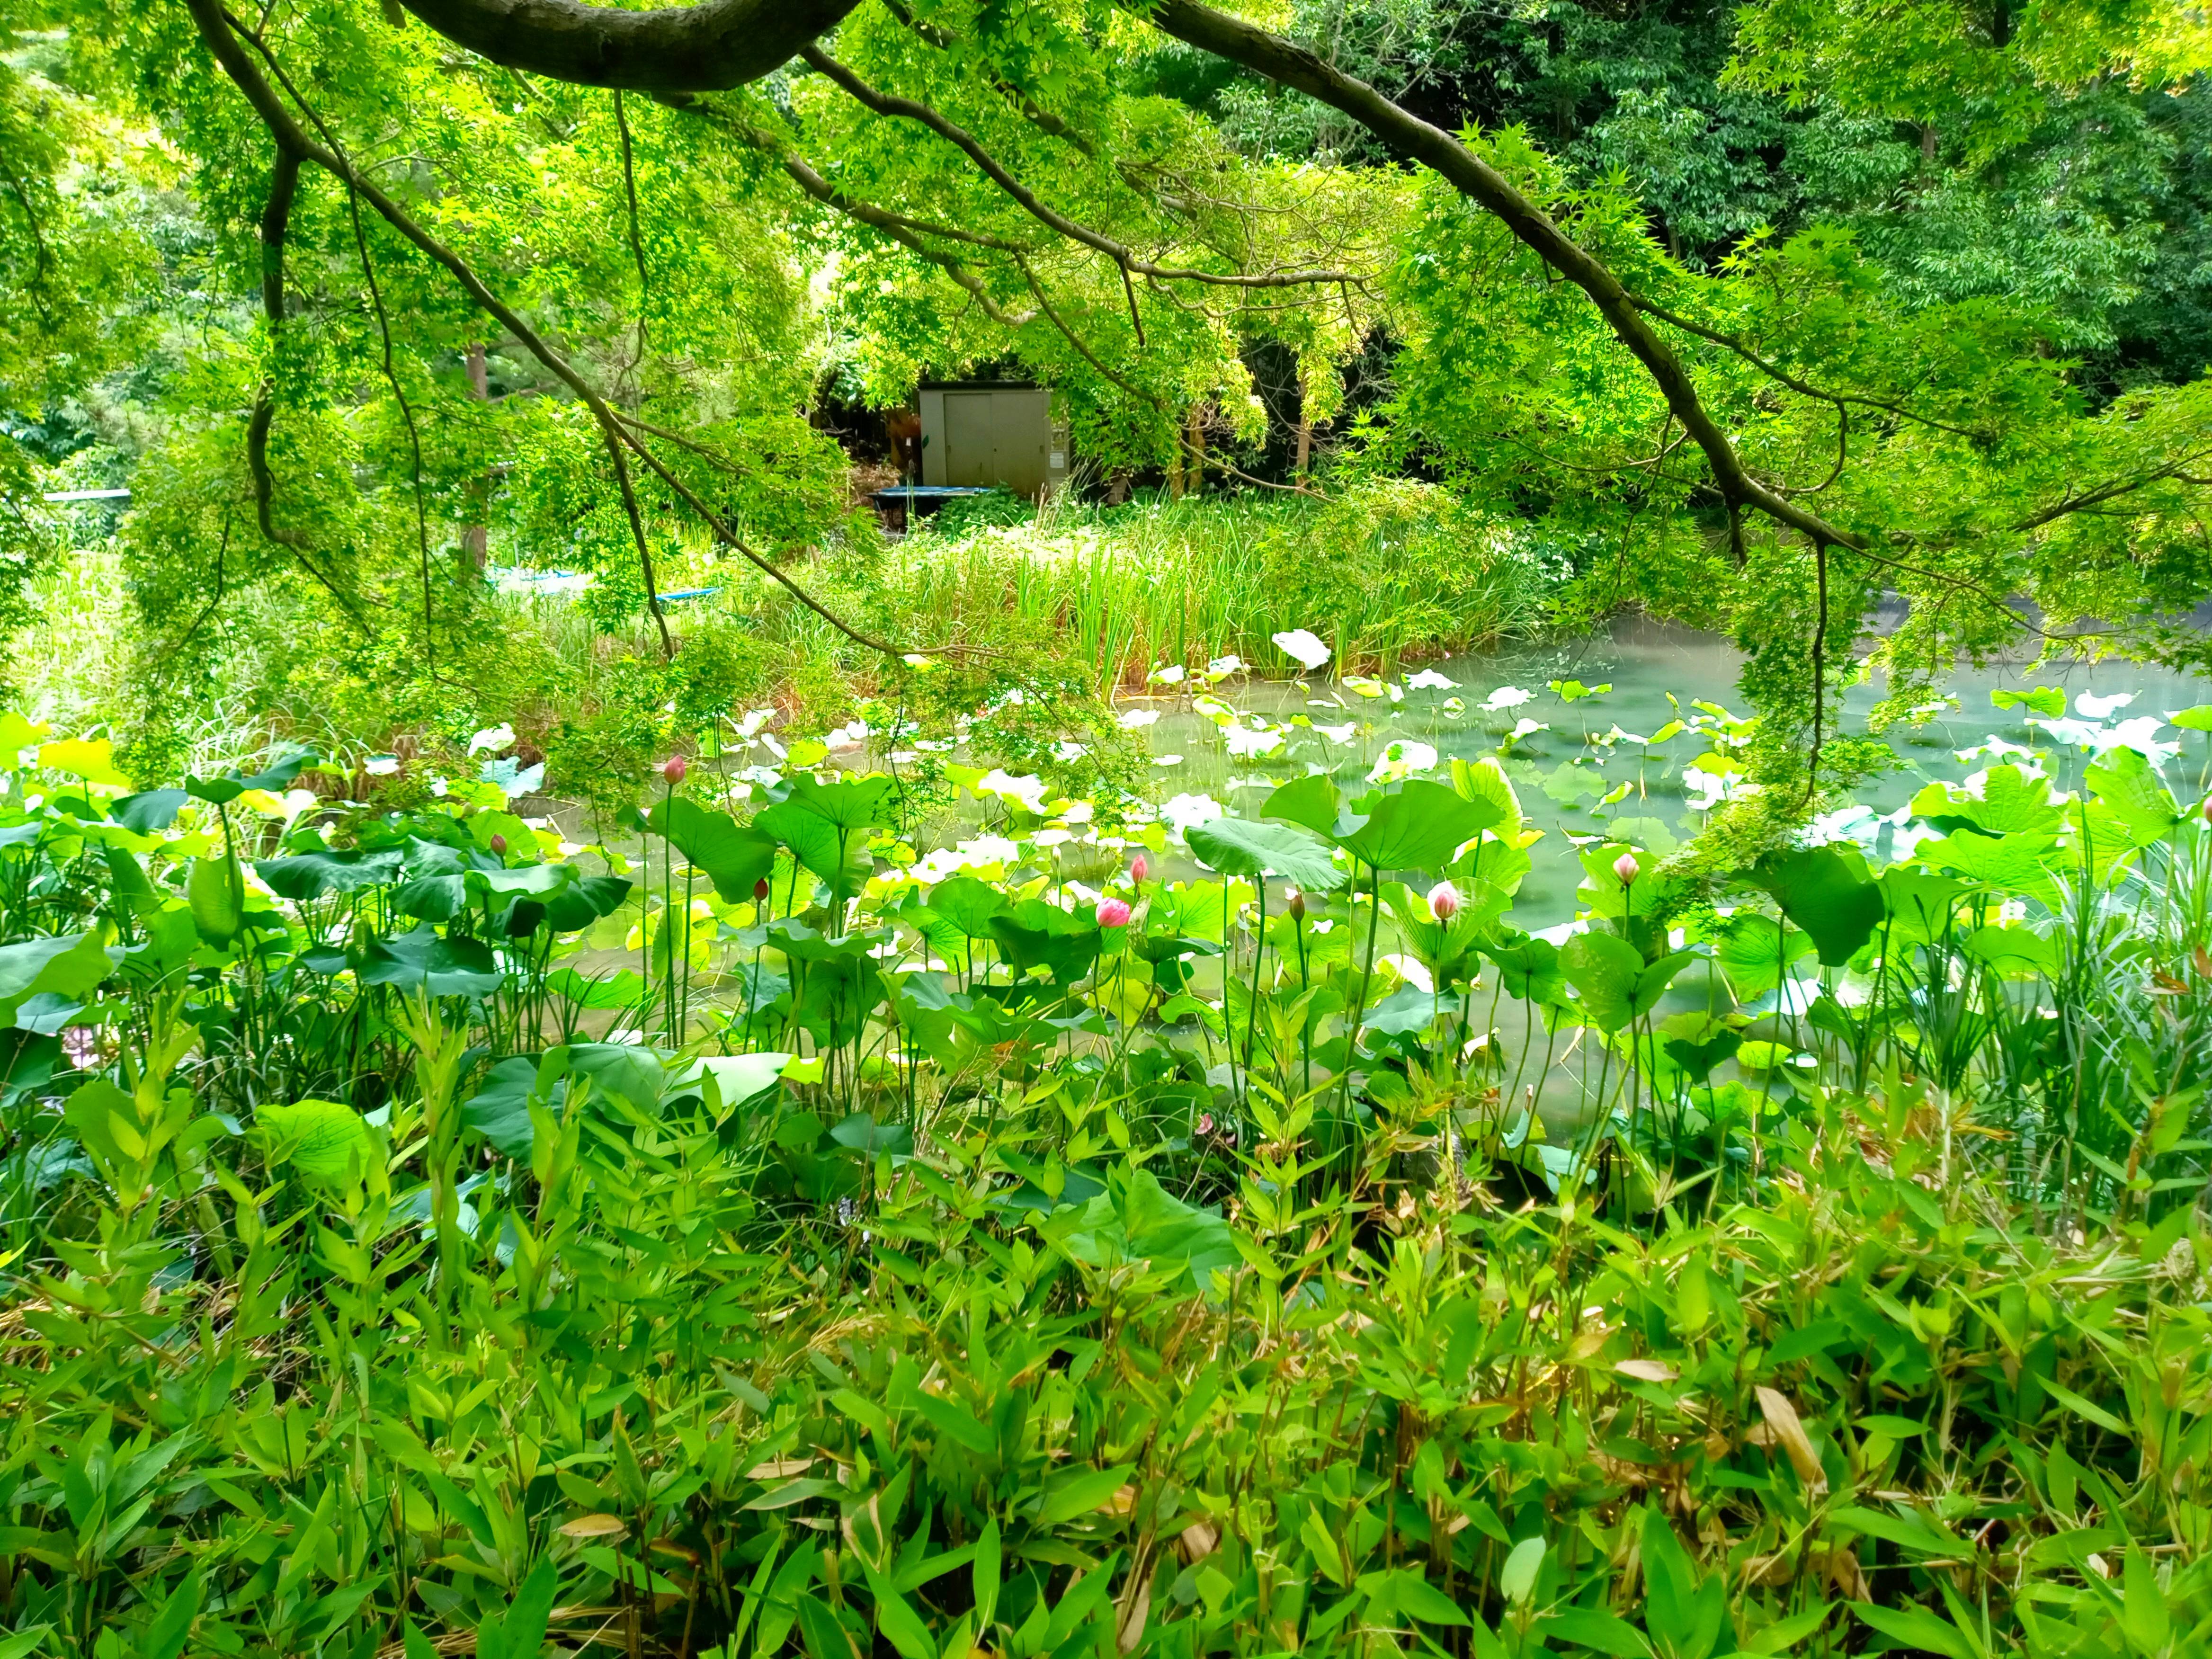 ジュンサイ池緑地公園もみじ谷脇に咲く蓮の花